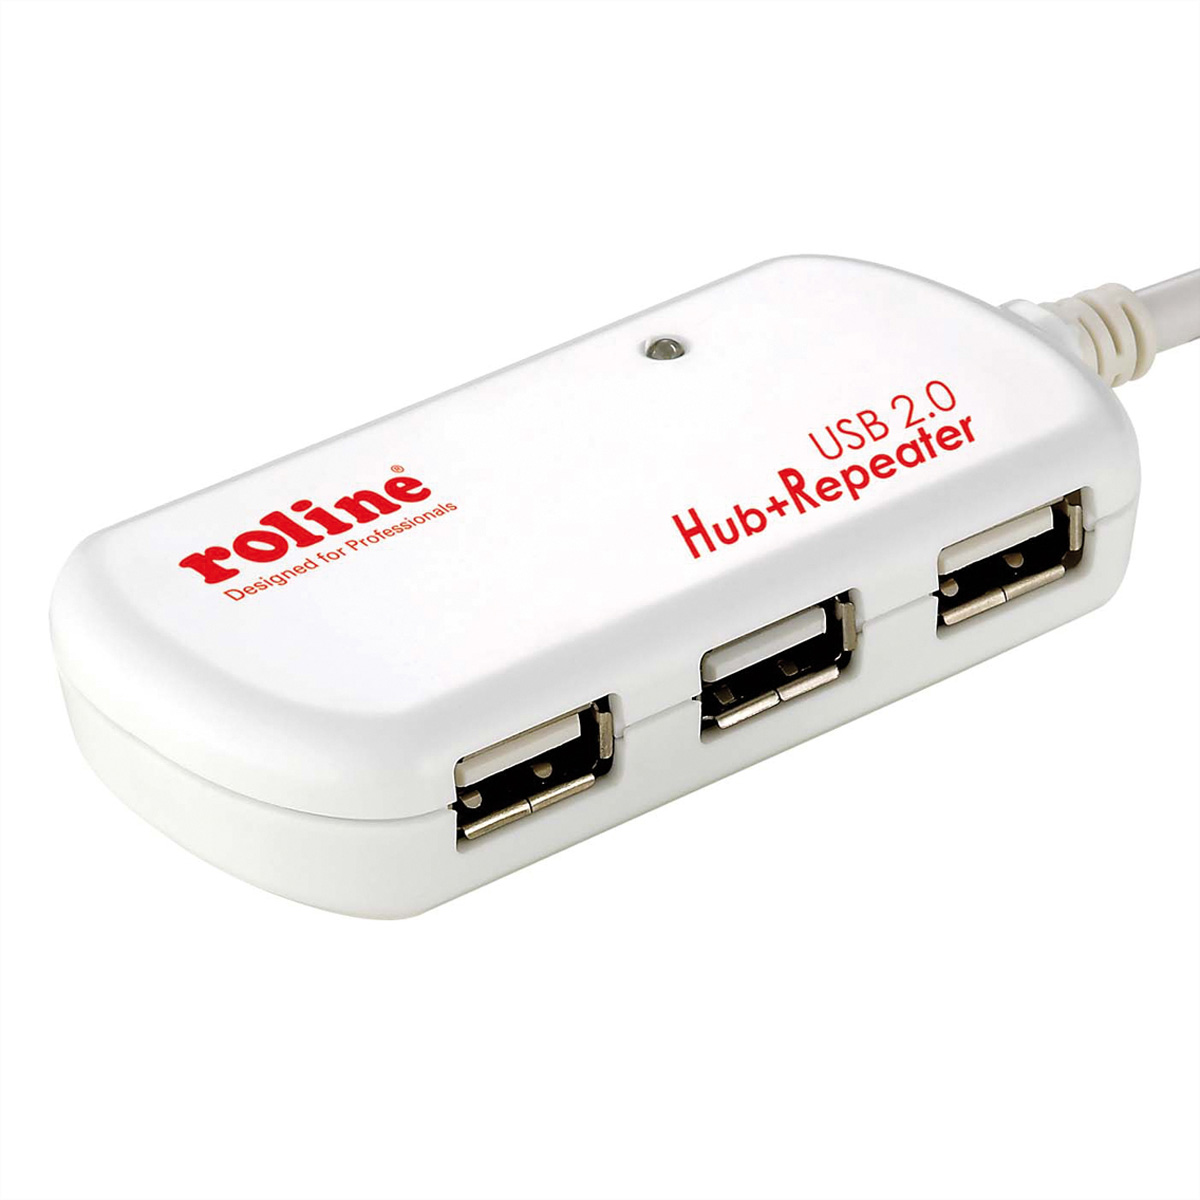 ROLINE USB 2.0 4-Port Hub mit Repeater, 12 m